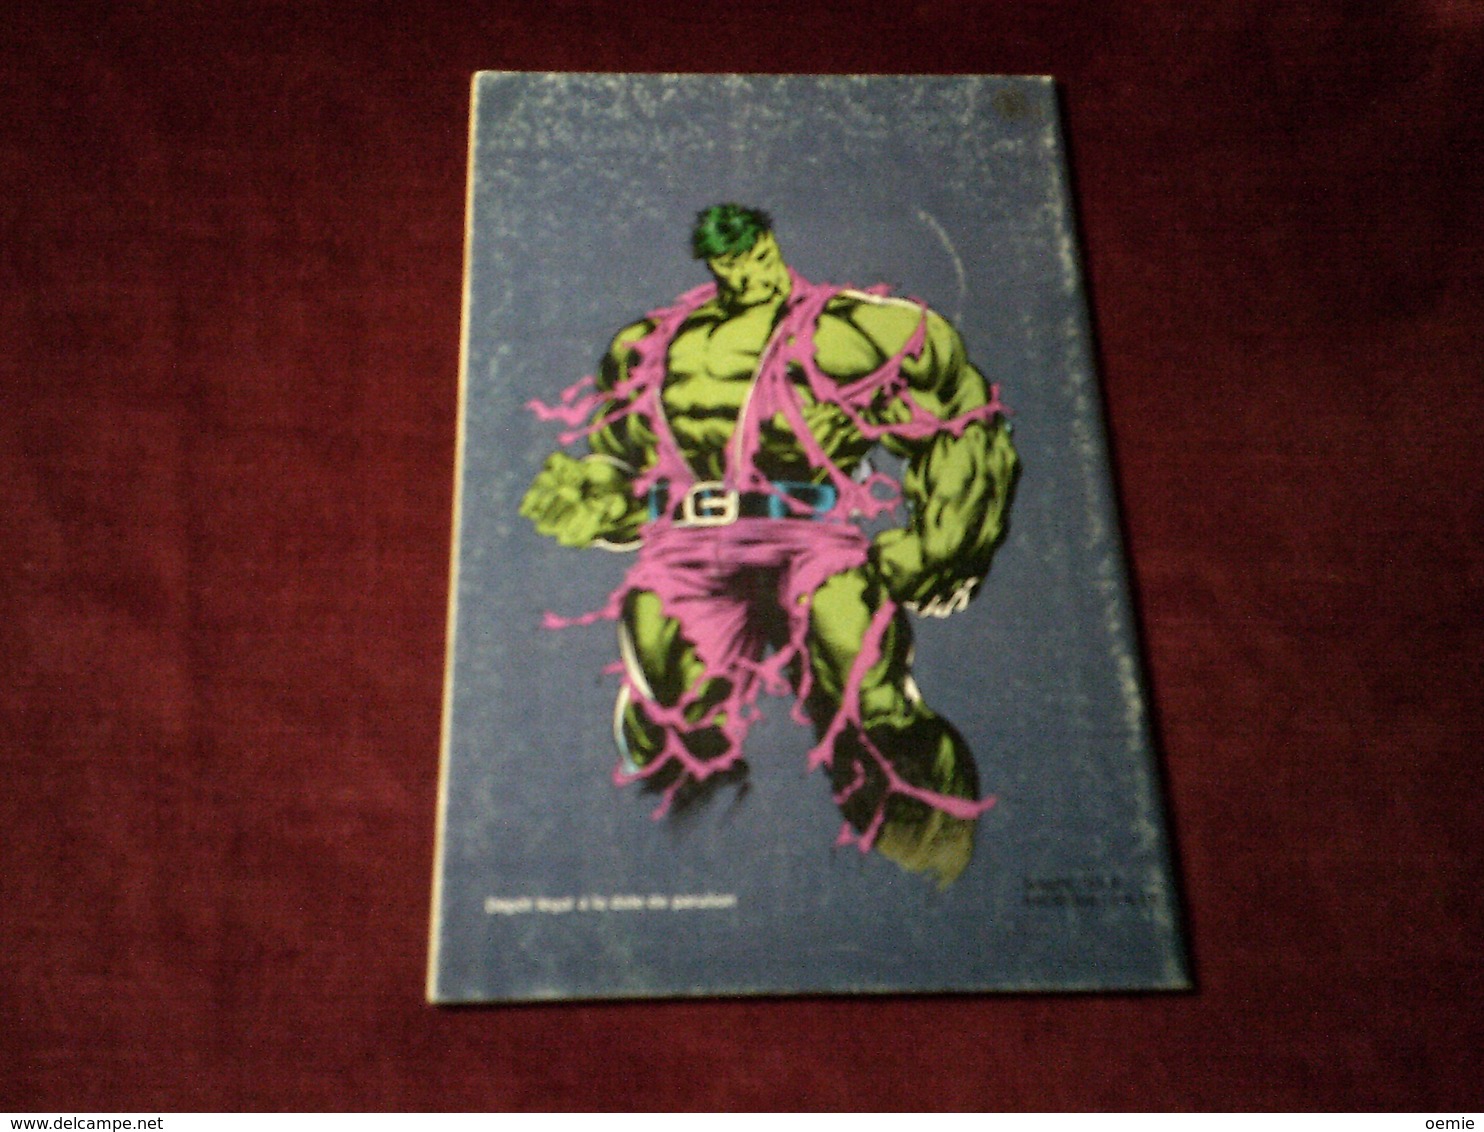 HULK  °  N° 10   /   1993 - Hulk